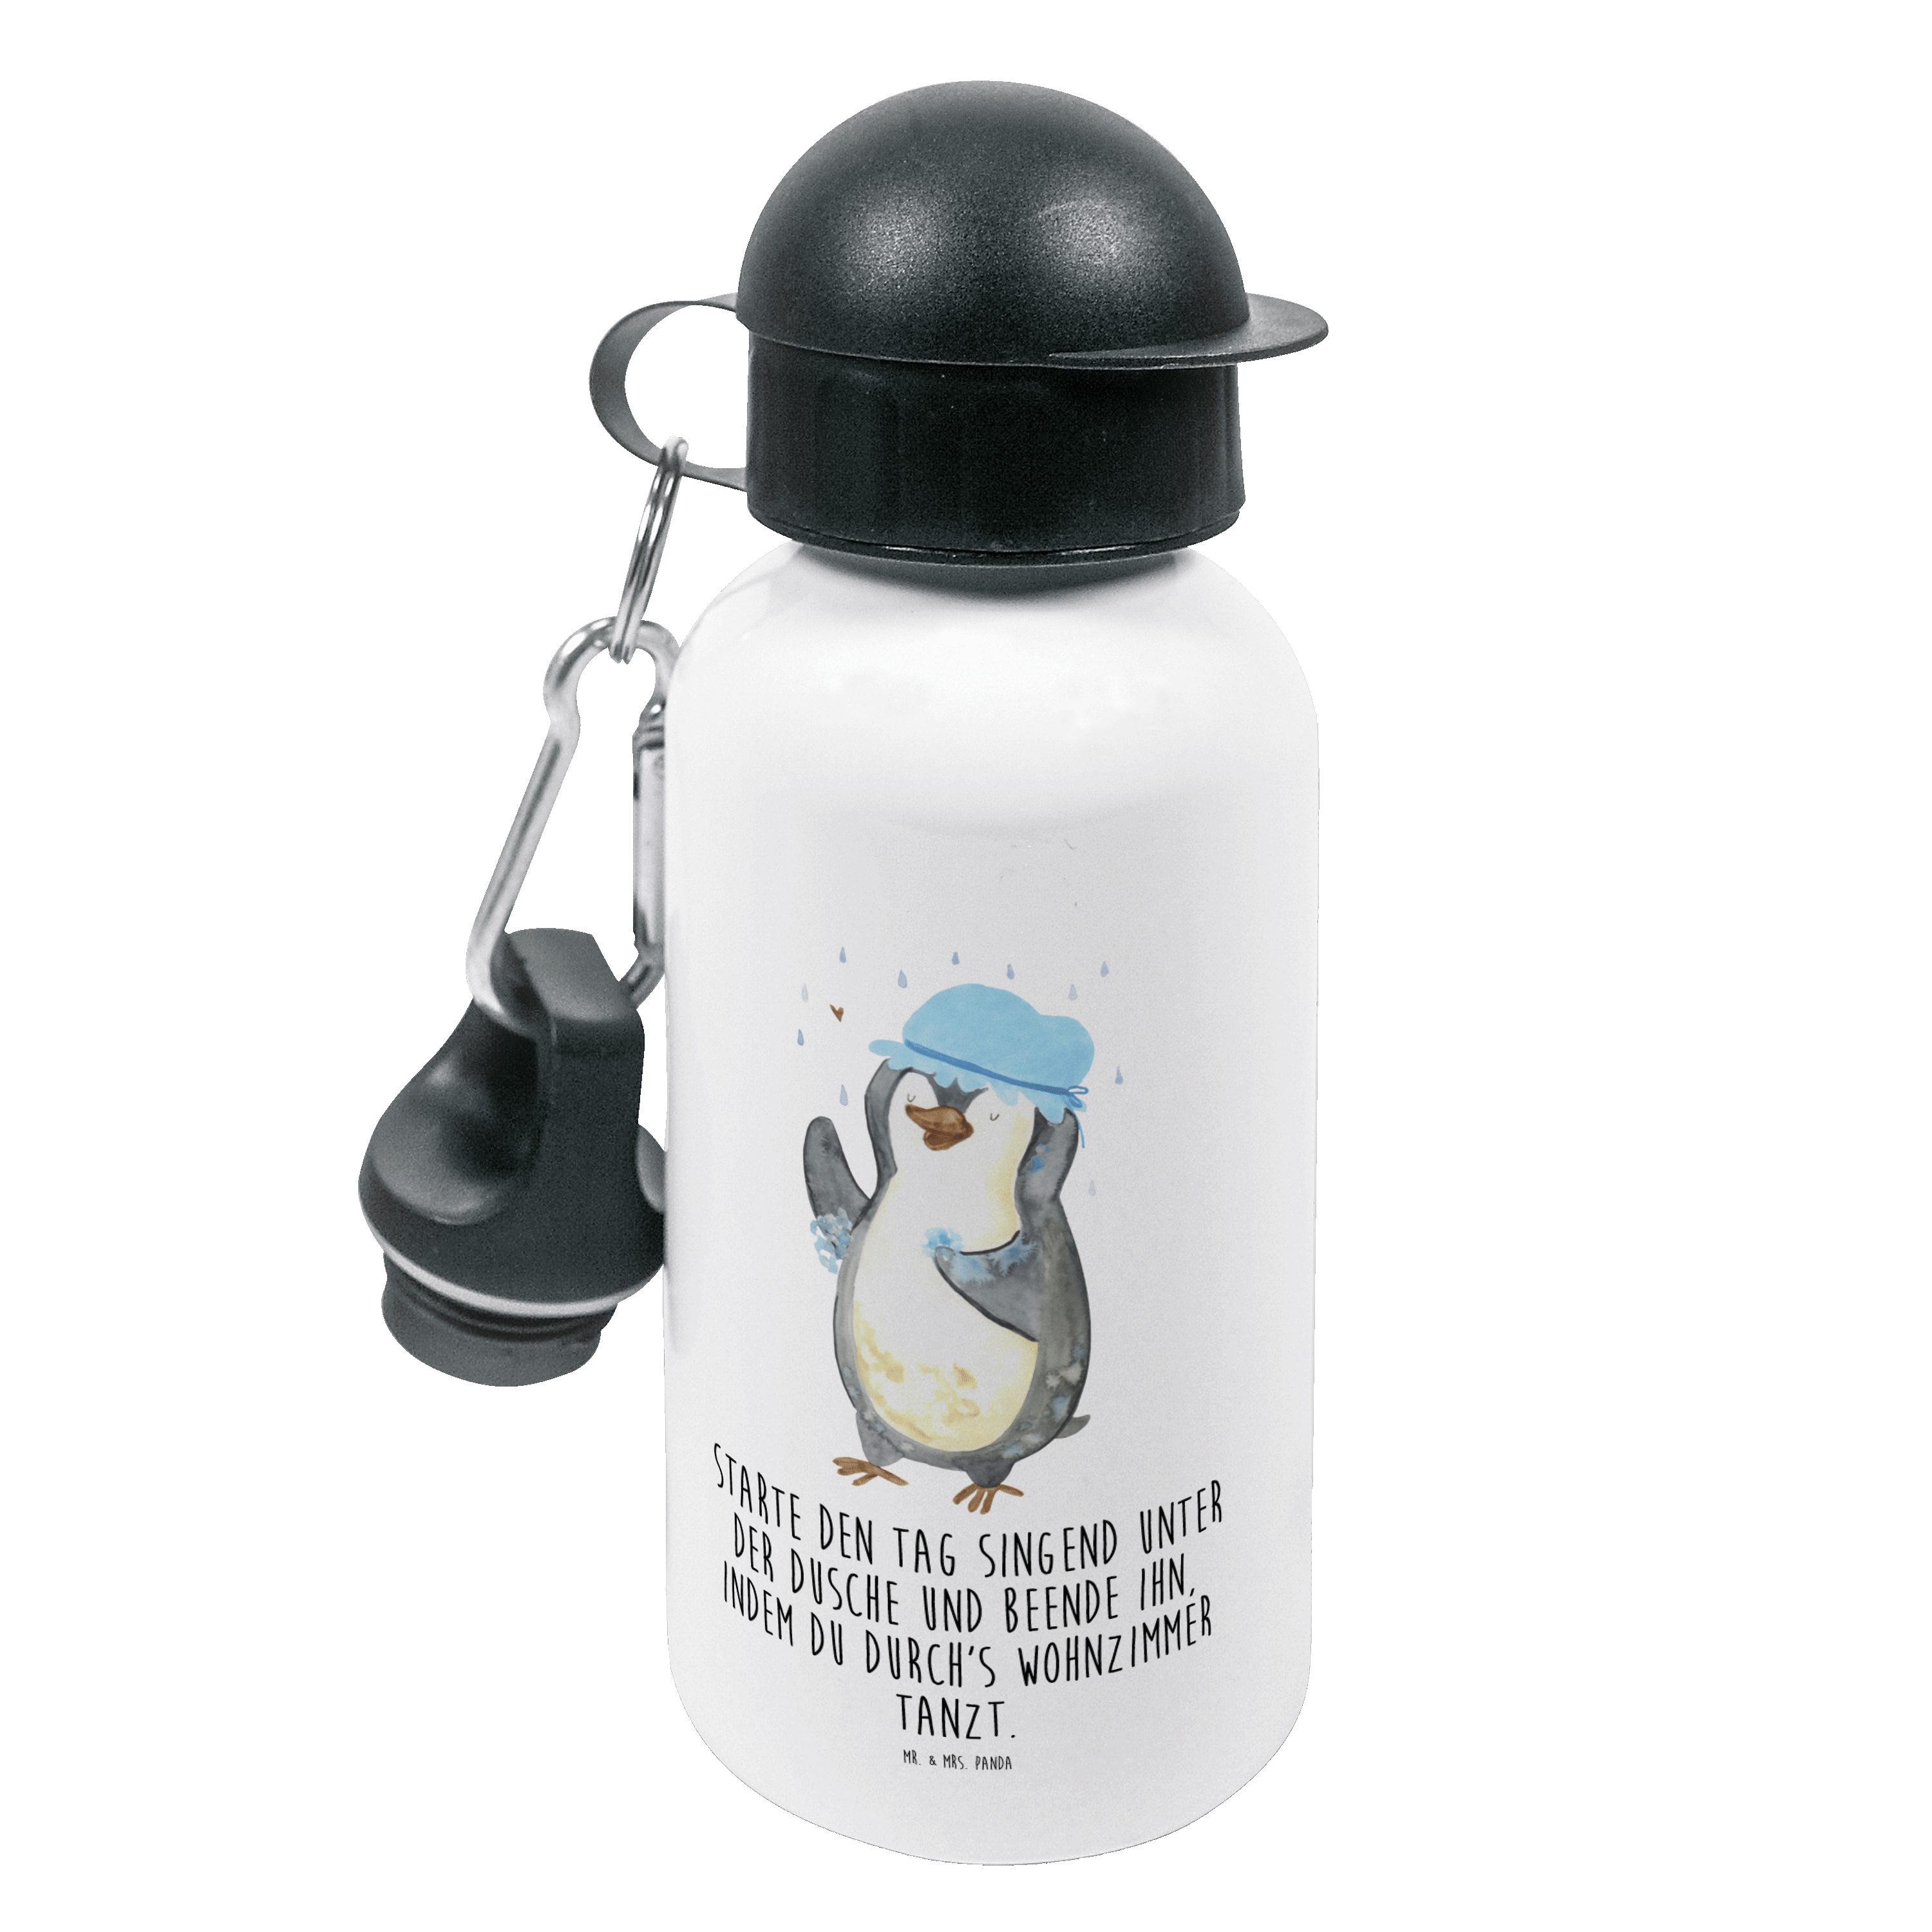 Mr. & Mrs. Panda Trinkflasche Pinguin duscht - Weiß - Geschenk, glücklich sein, Motivation, Dusche